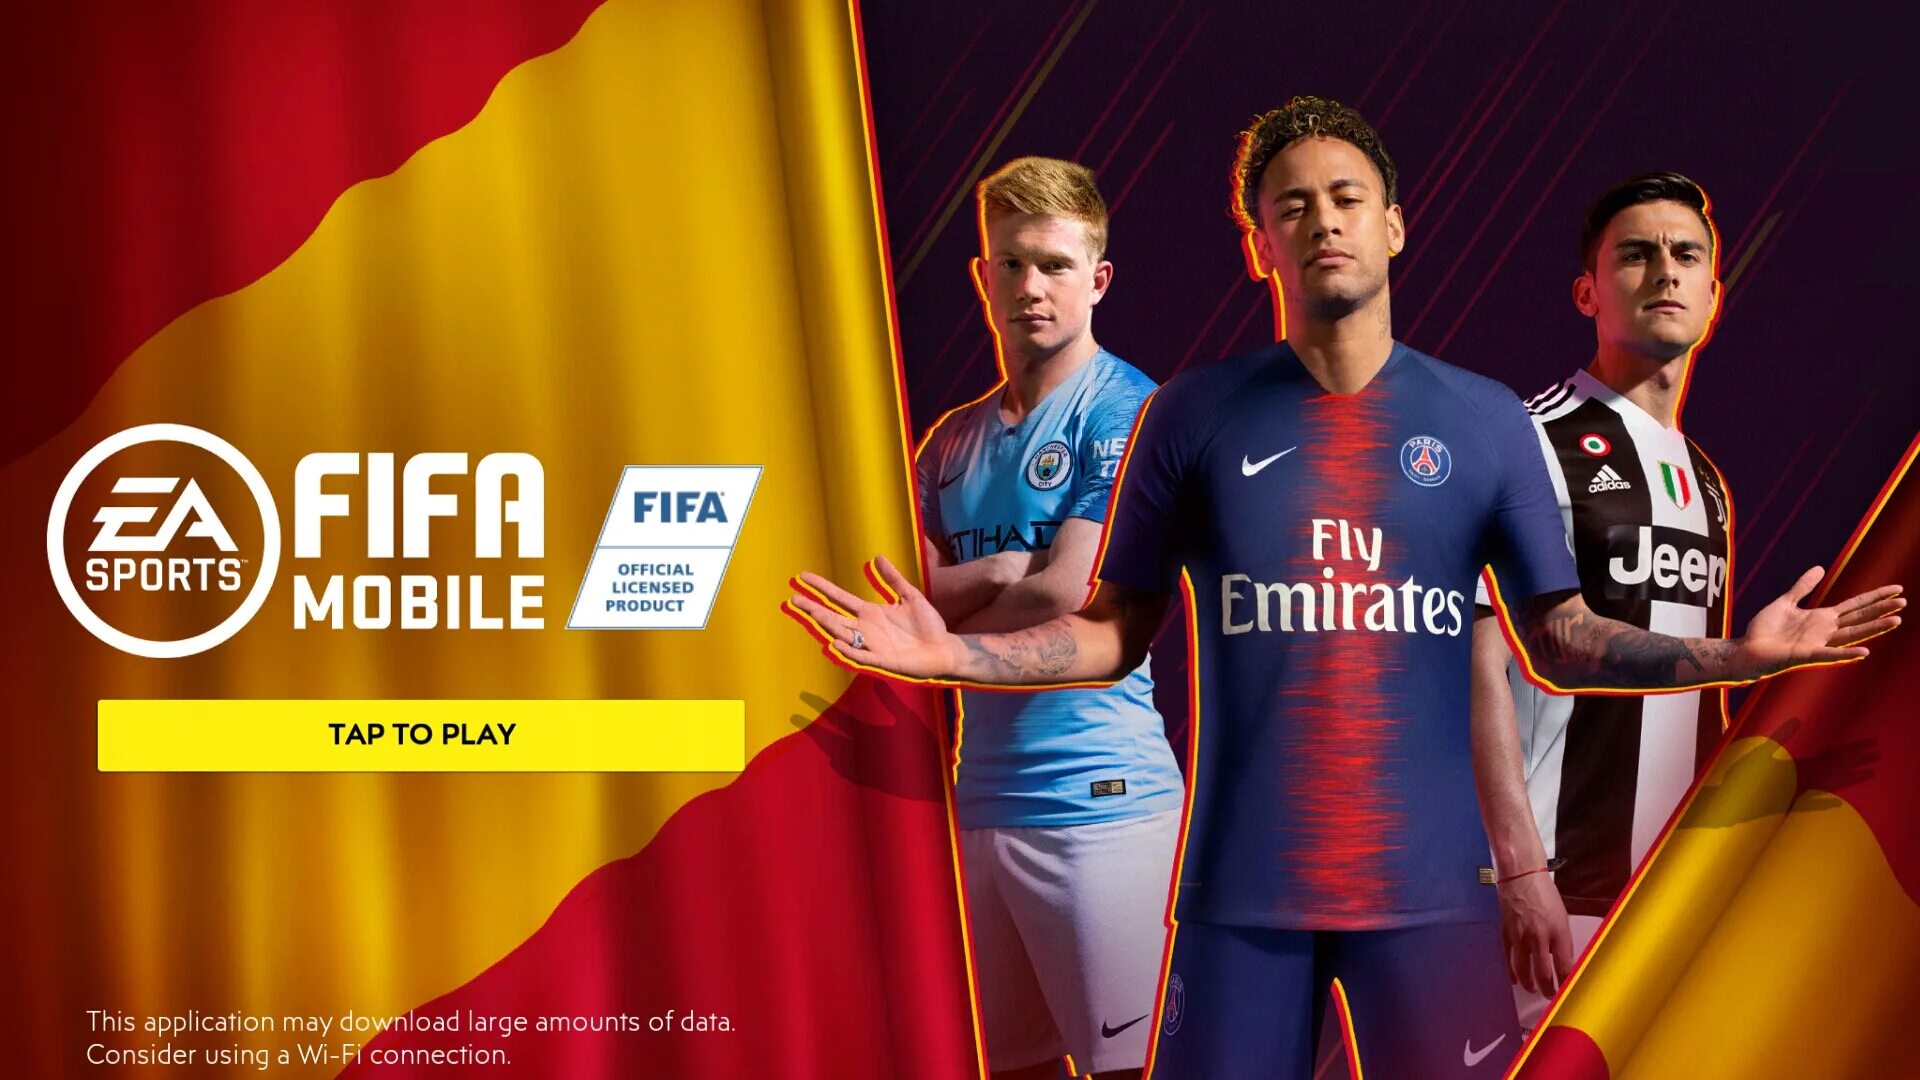 Fifa masters. ФИФА мобайл 19. ФИФА мобайл 2019. FIFA mobile логотип. FIFA mobile и Sport.